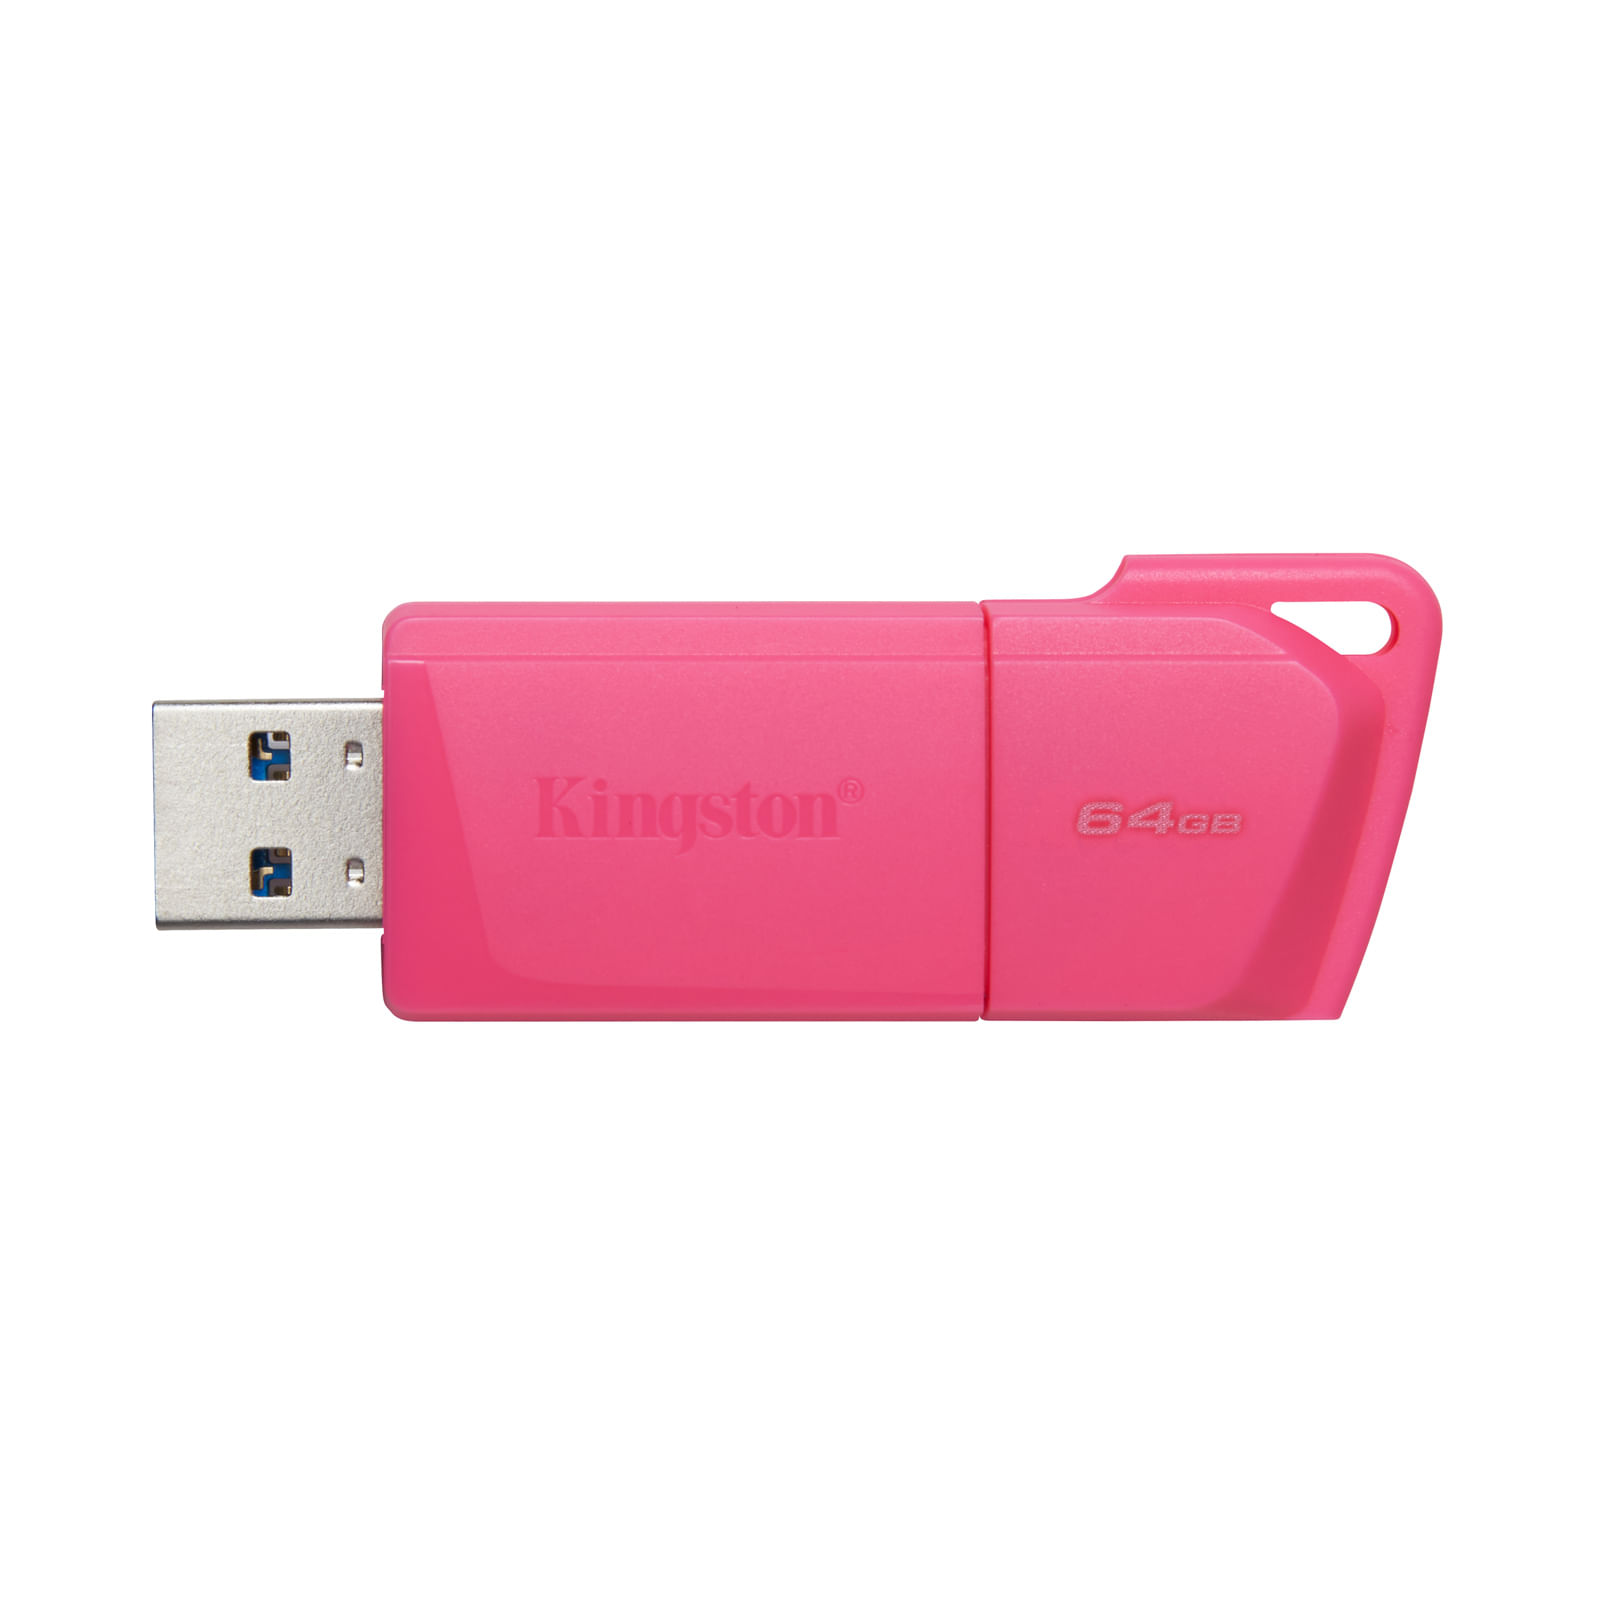 Memoria USB Kingston rosada neón de 64 GB